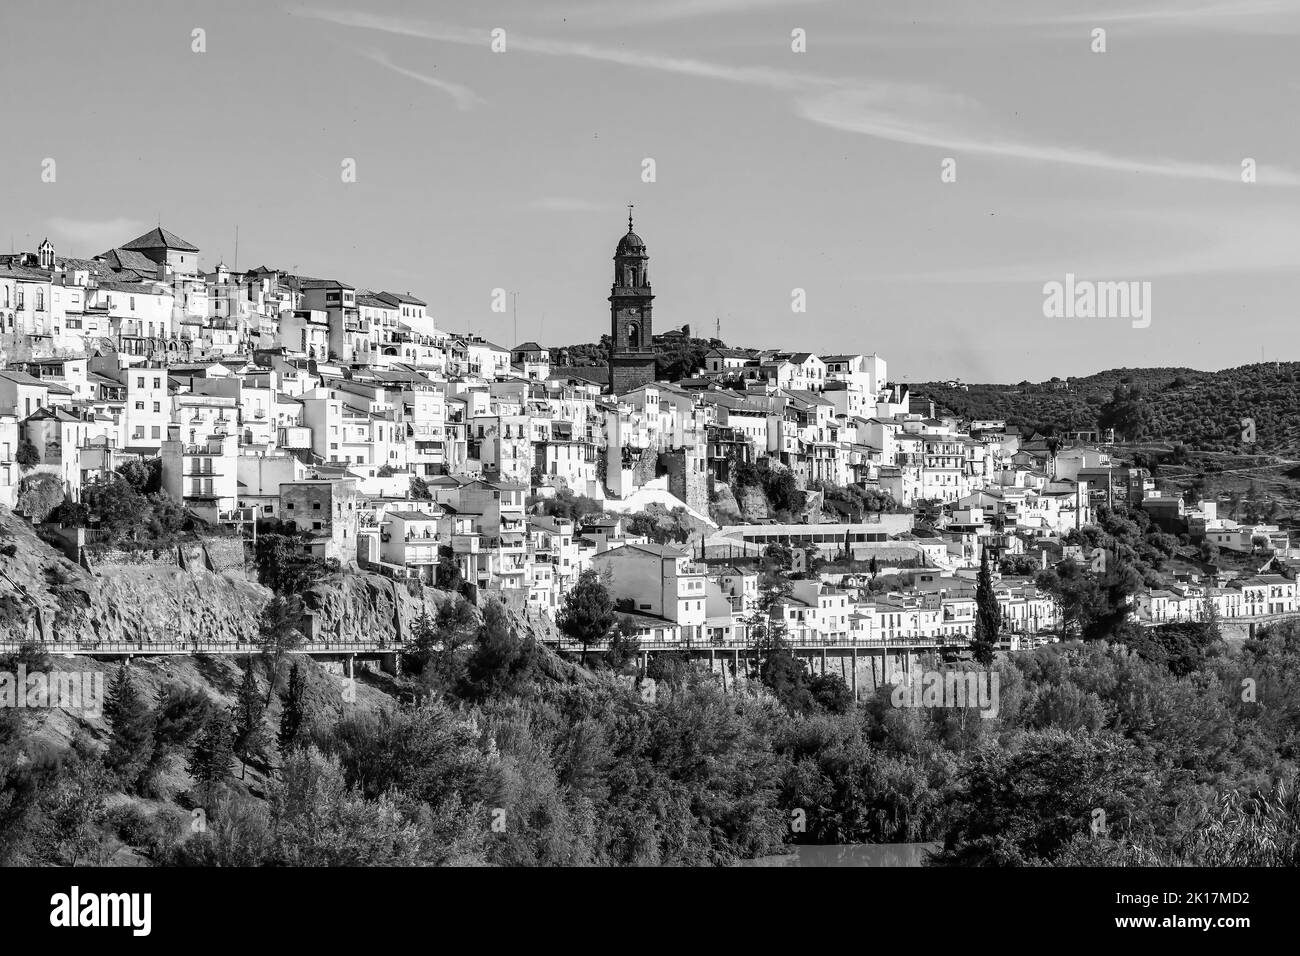 Vue sur le village de Montoro, ville et commune de la province de Cordoue, en Espagne, dans la communauté autonome d'Andalousie. En noir et blanc Banque D'Images